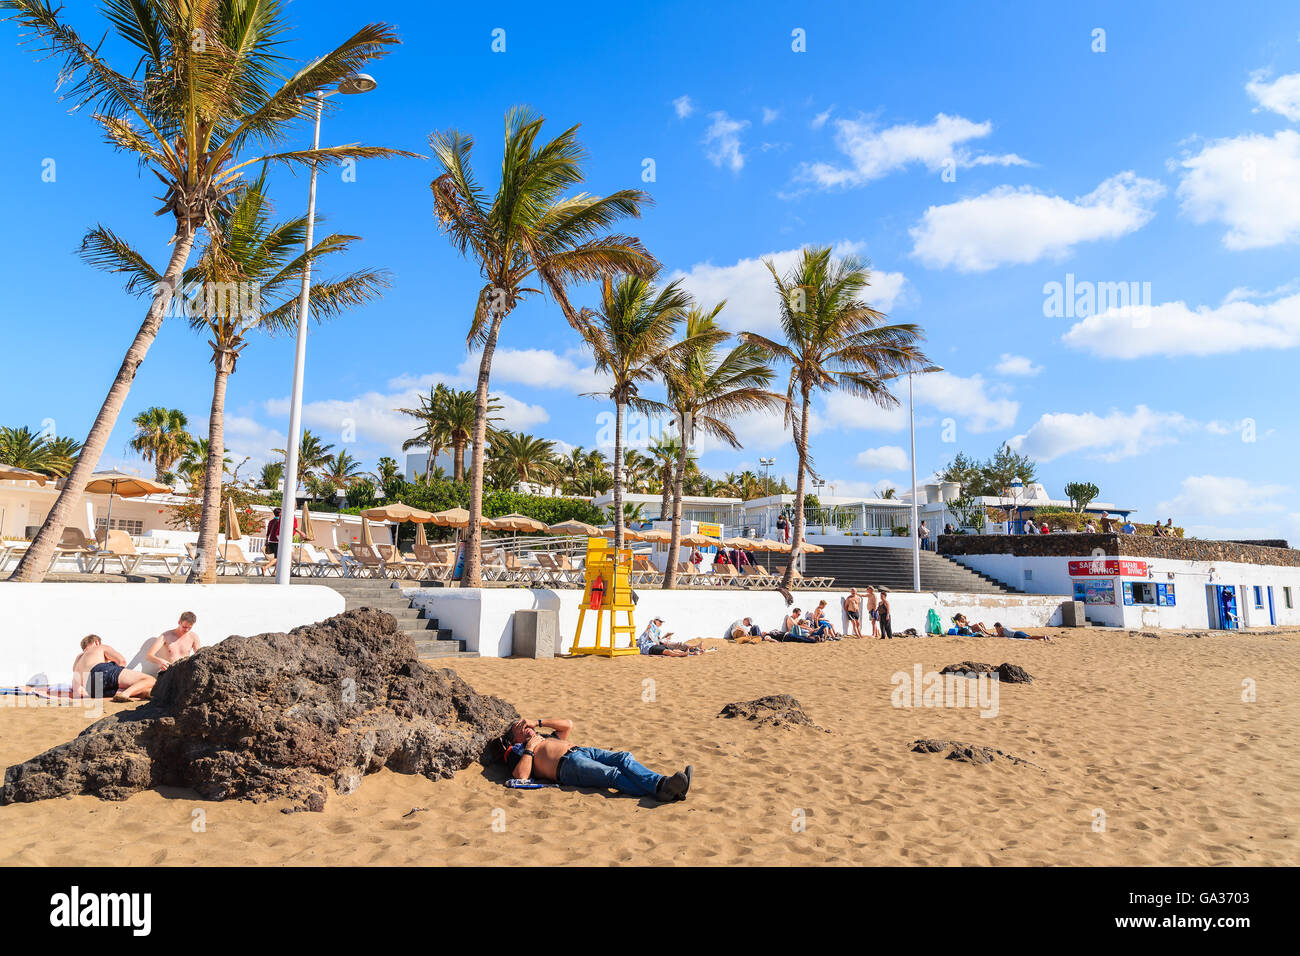 Spiaggia di Puerto del Carmen, Lanzarote Island - Jan 17, 2015: spiaggia tropicale con palme in Puerto del Carmen town. Le isole Canarie sono destinazione di vacanza popolare tra i turisti europei. Foto Stock